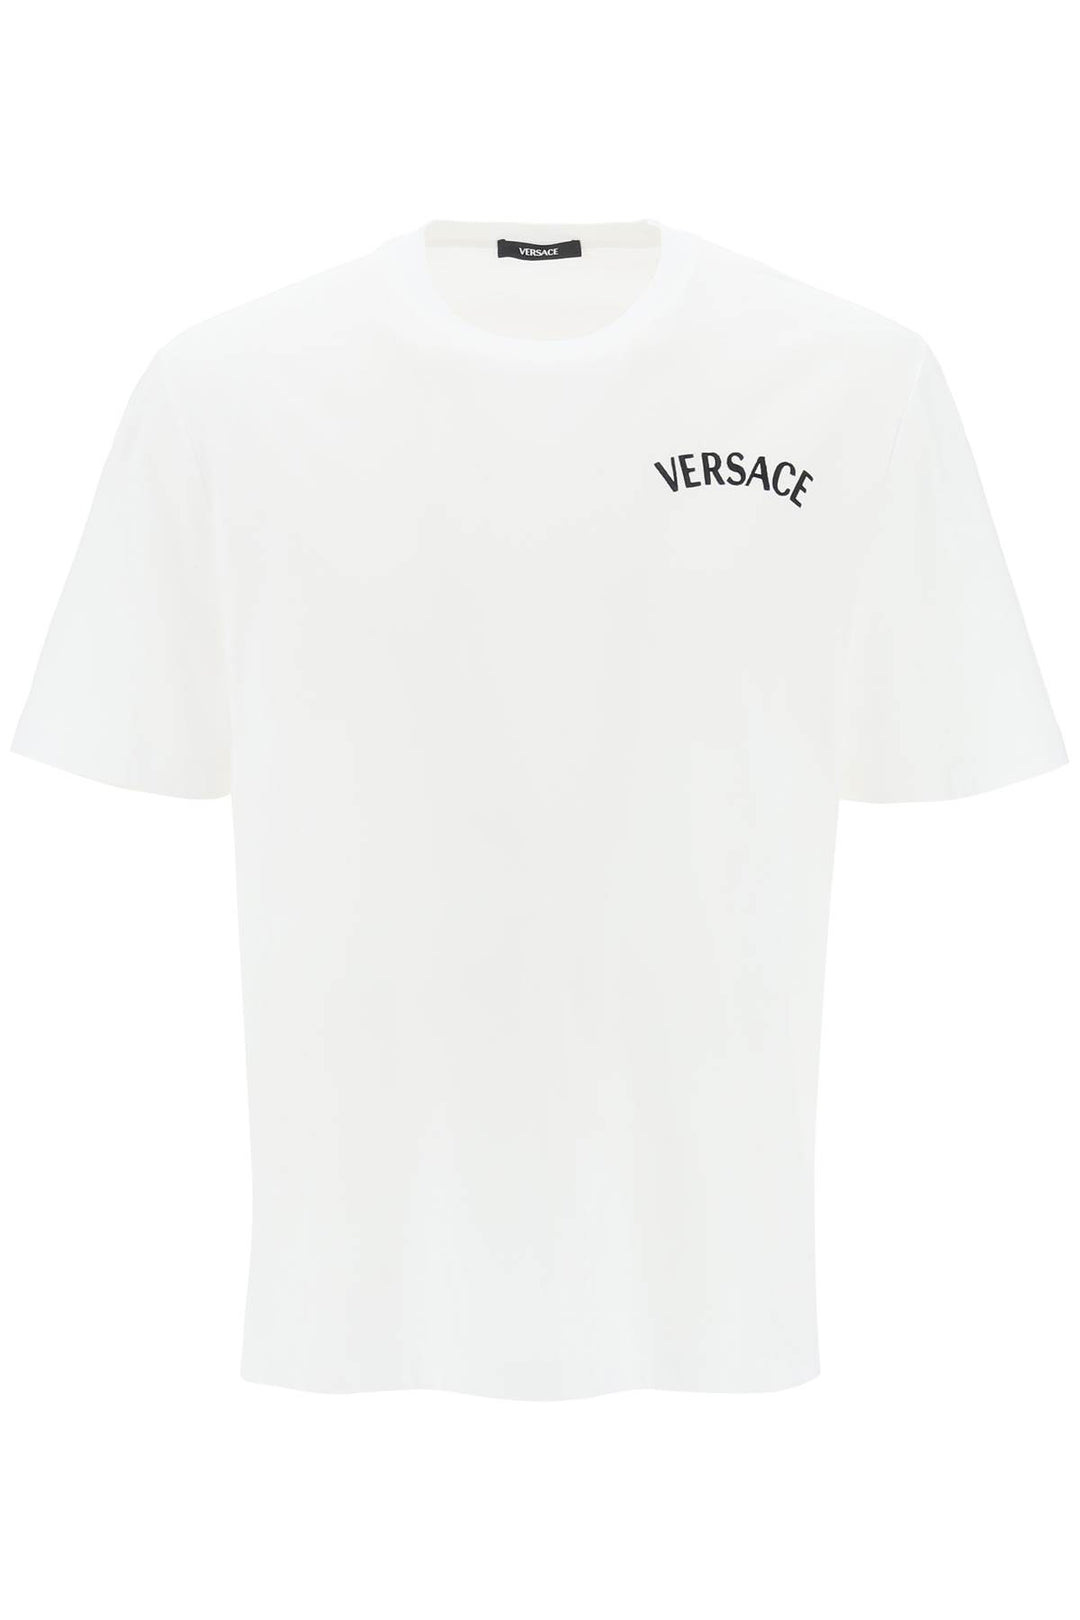 Versace Milano Stamp Crew Neck T Shirt   Bianco